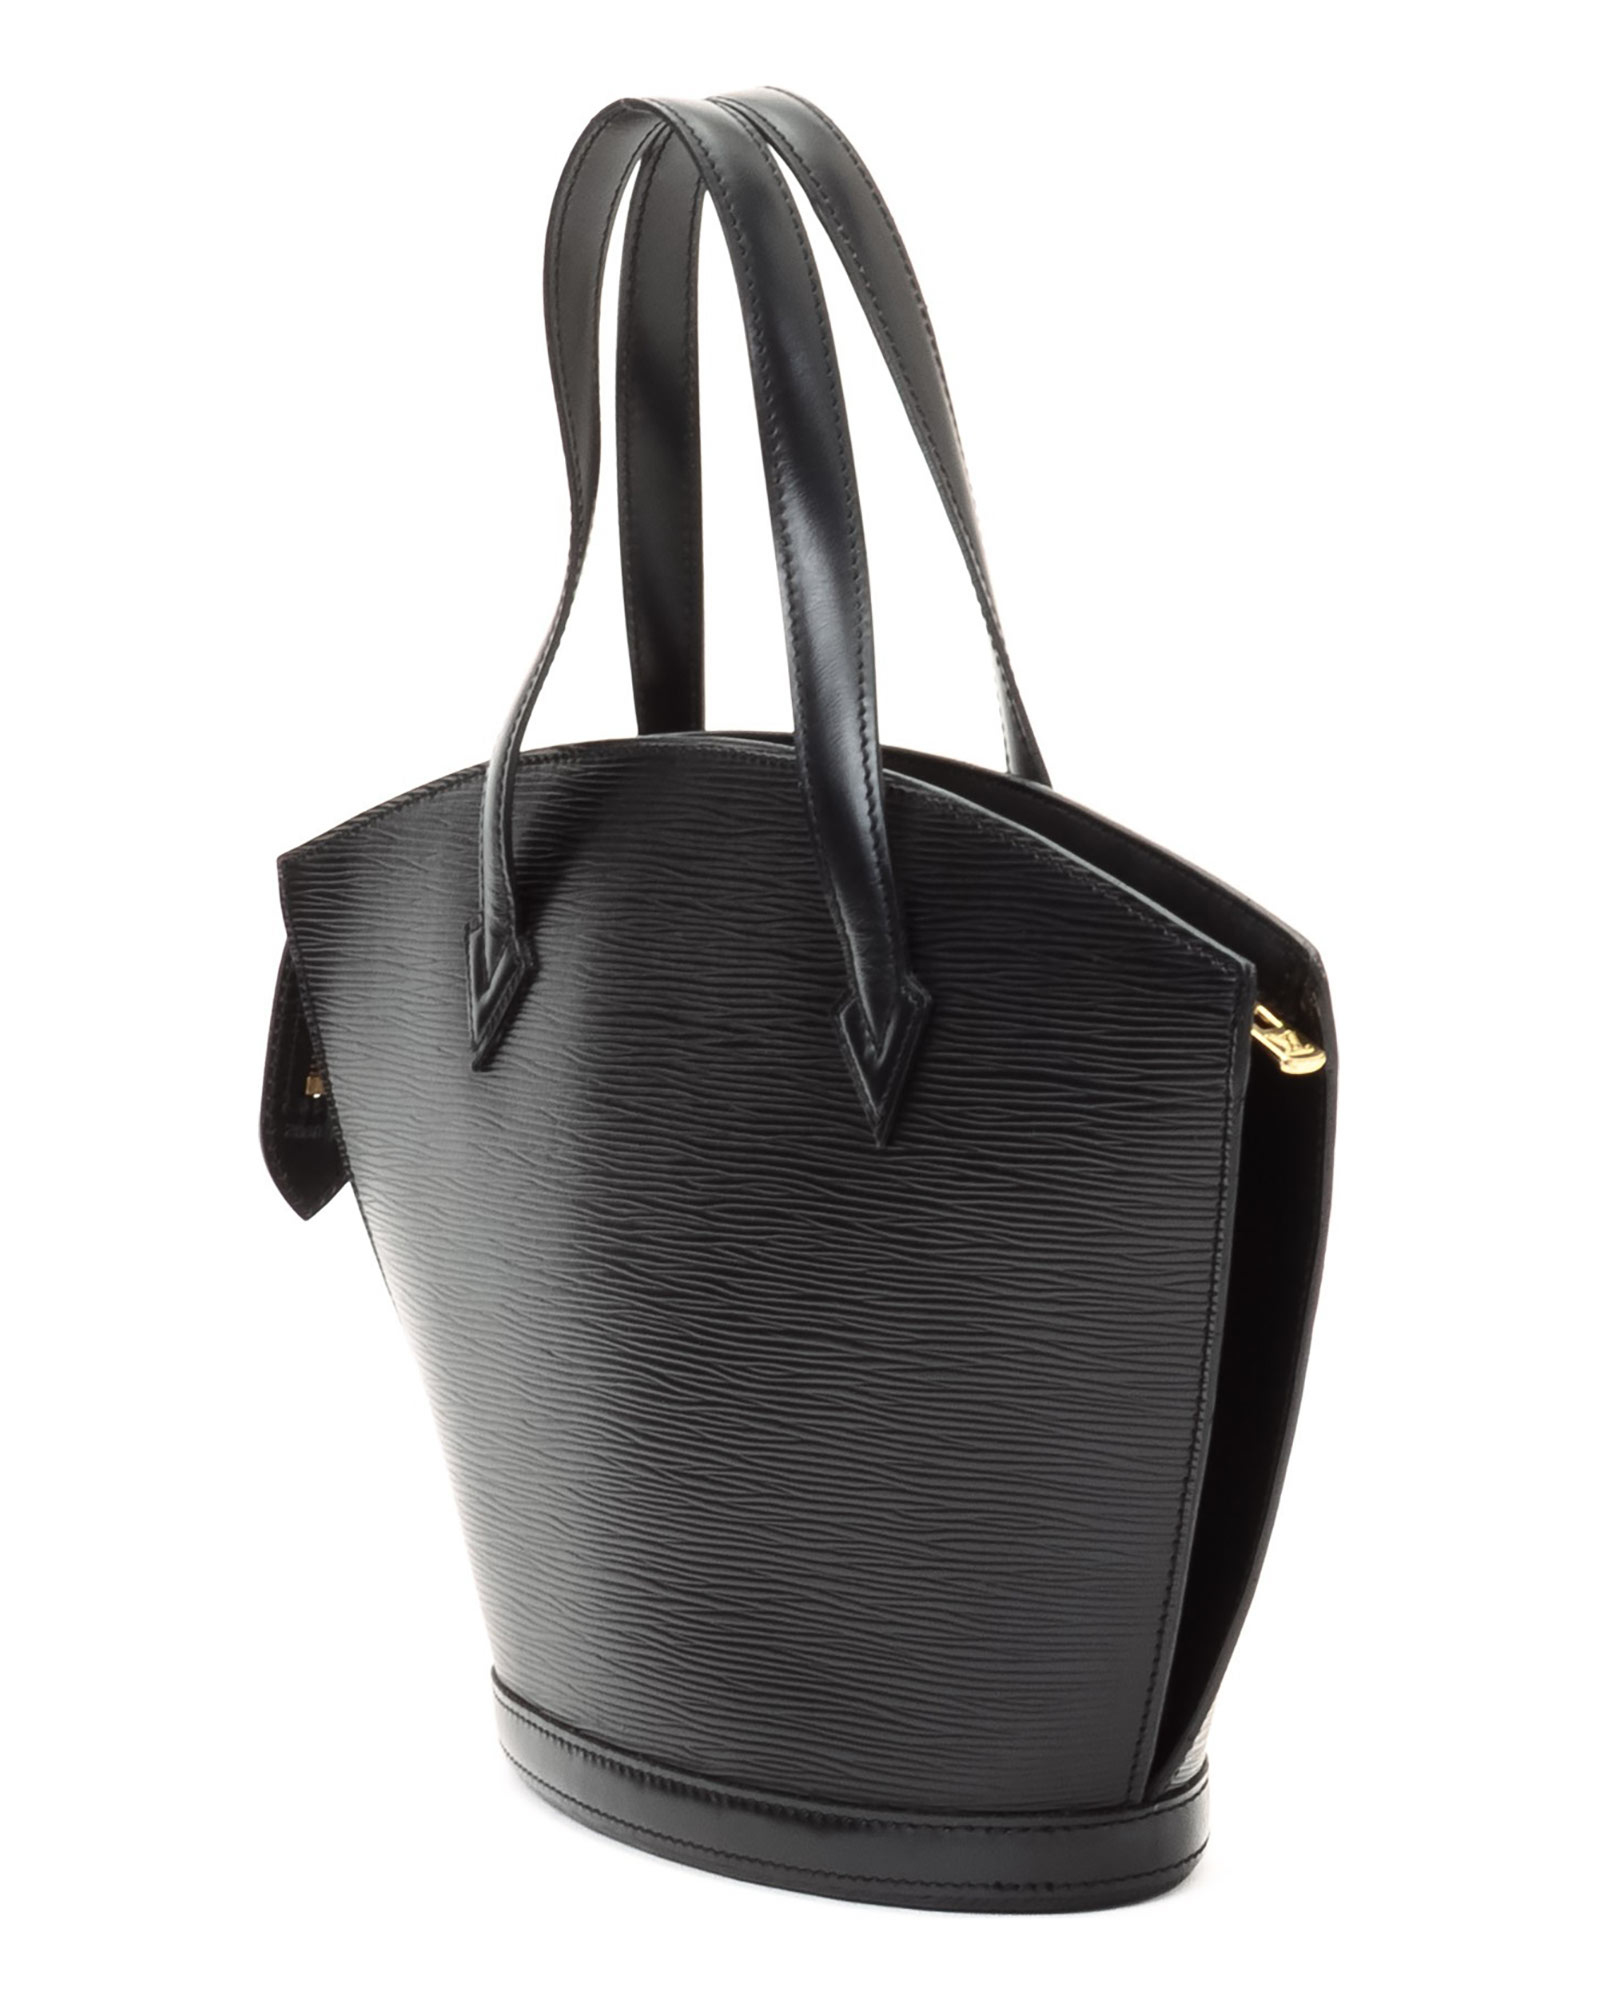 Lyst - Louis Vuitton Black Tote Bag - Vintage in Black